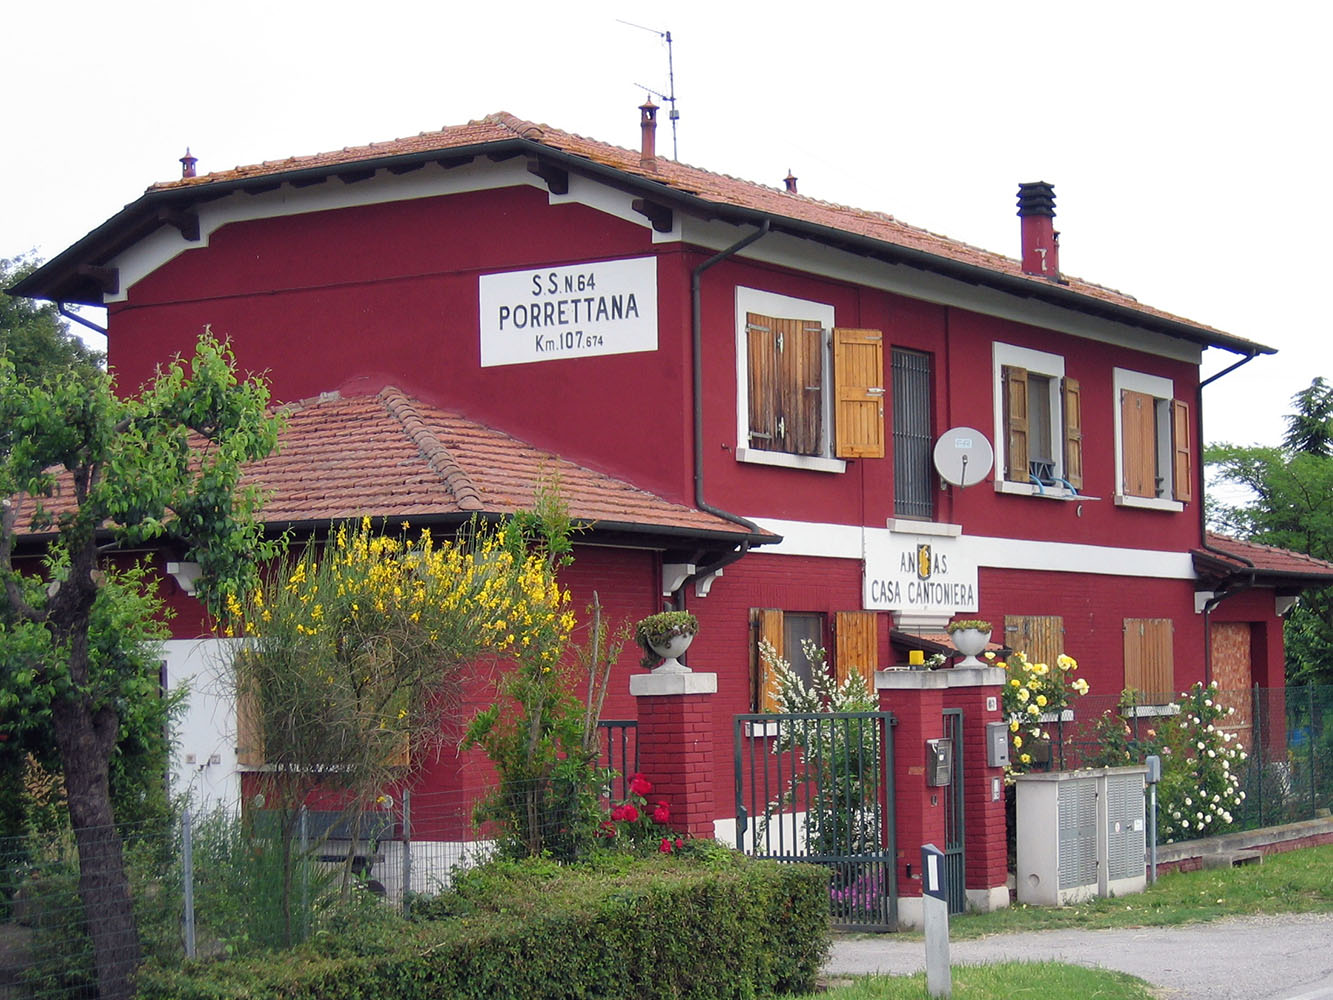 Casa Cantoniera Anas al km 107 della SS64 "Porrettana", Emilia Romagna (Archivio storico Anas)